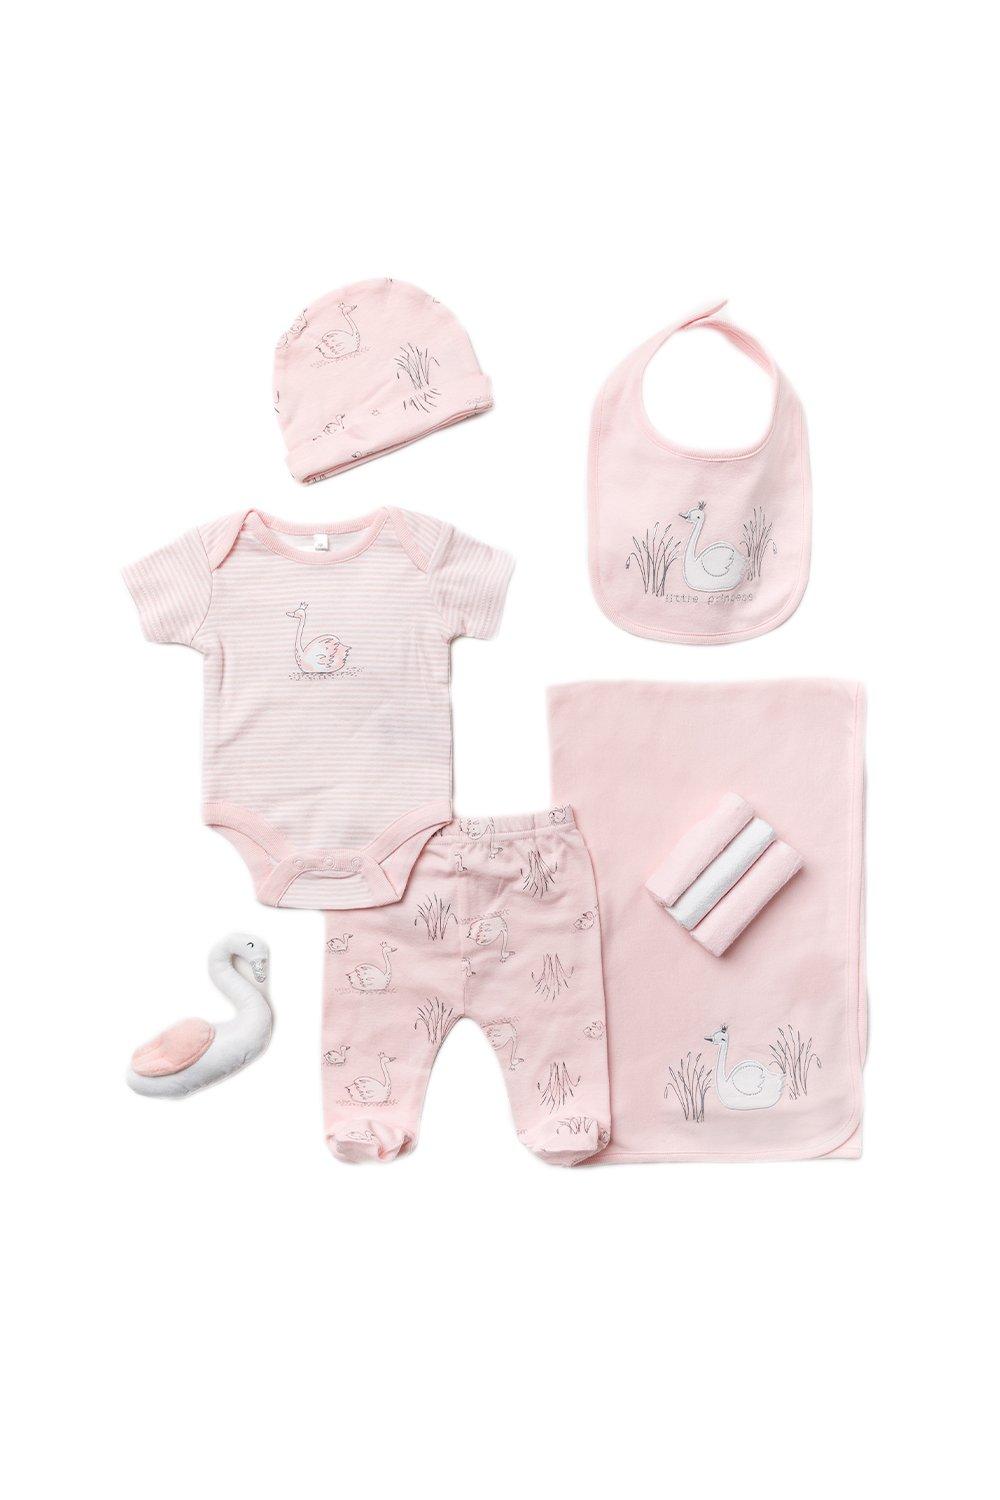 Хлопковый подарочный набор из 10 предметов с лебединым принтом для ребенка Rock a Bye Baby, розовый